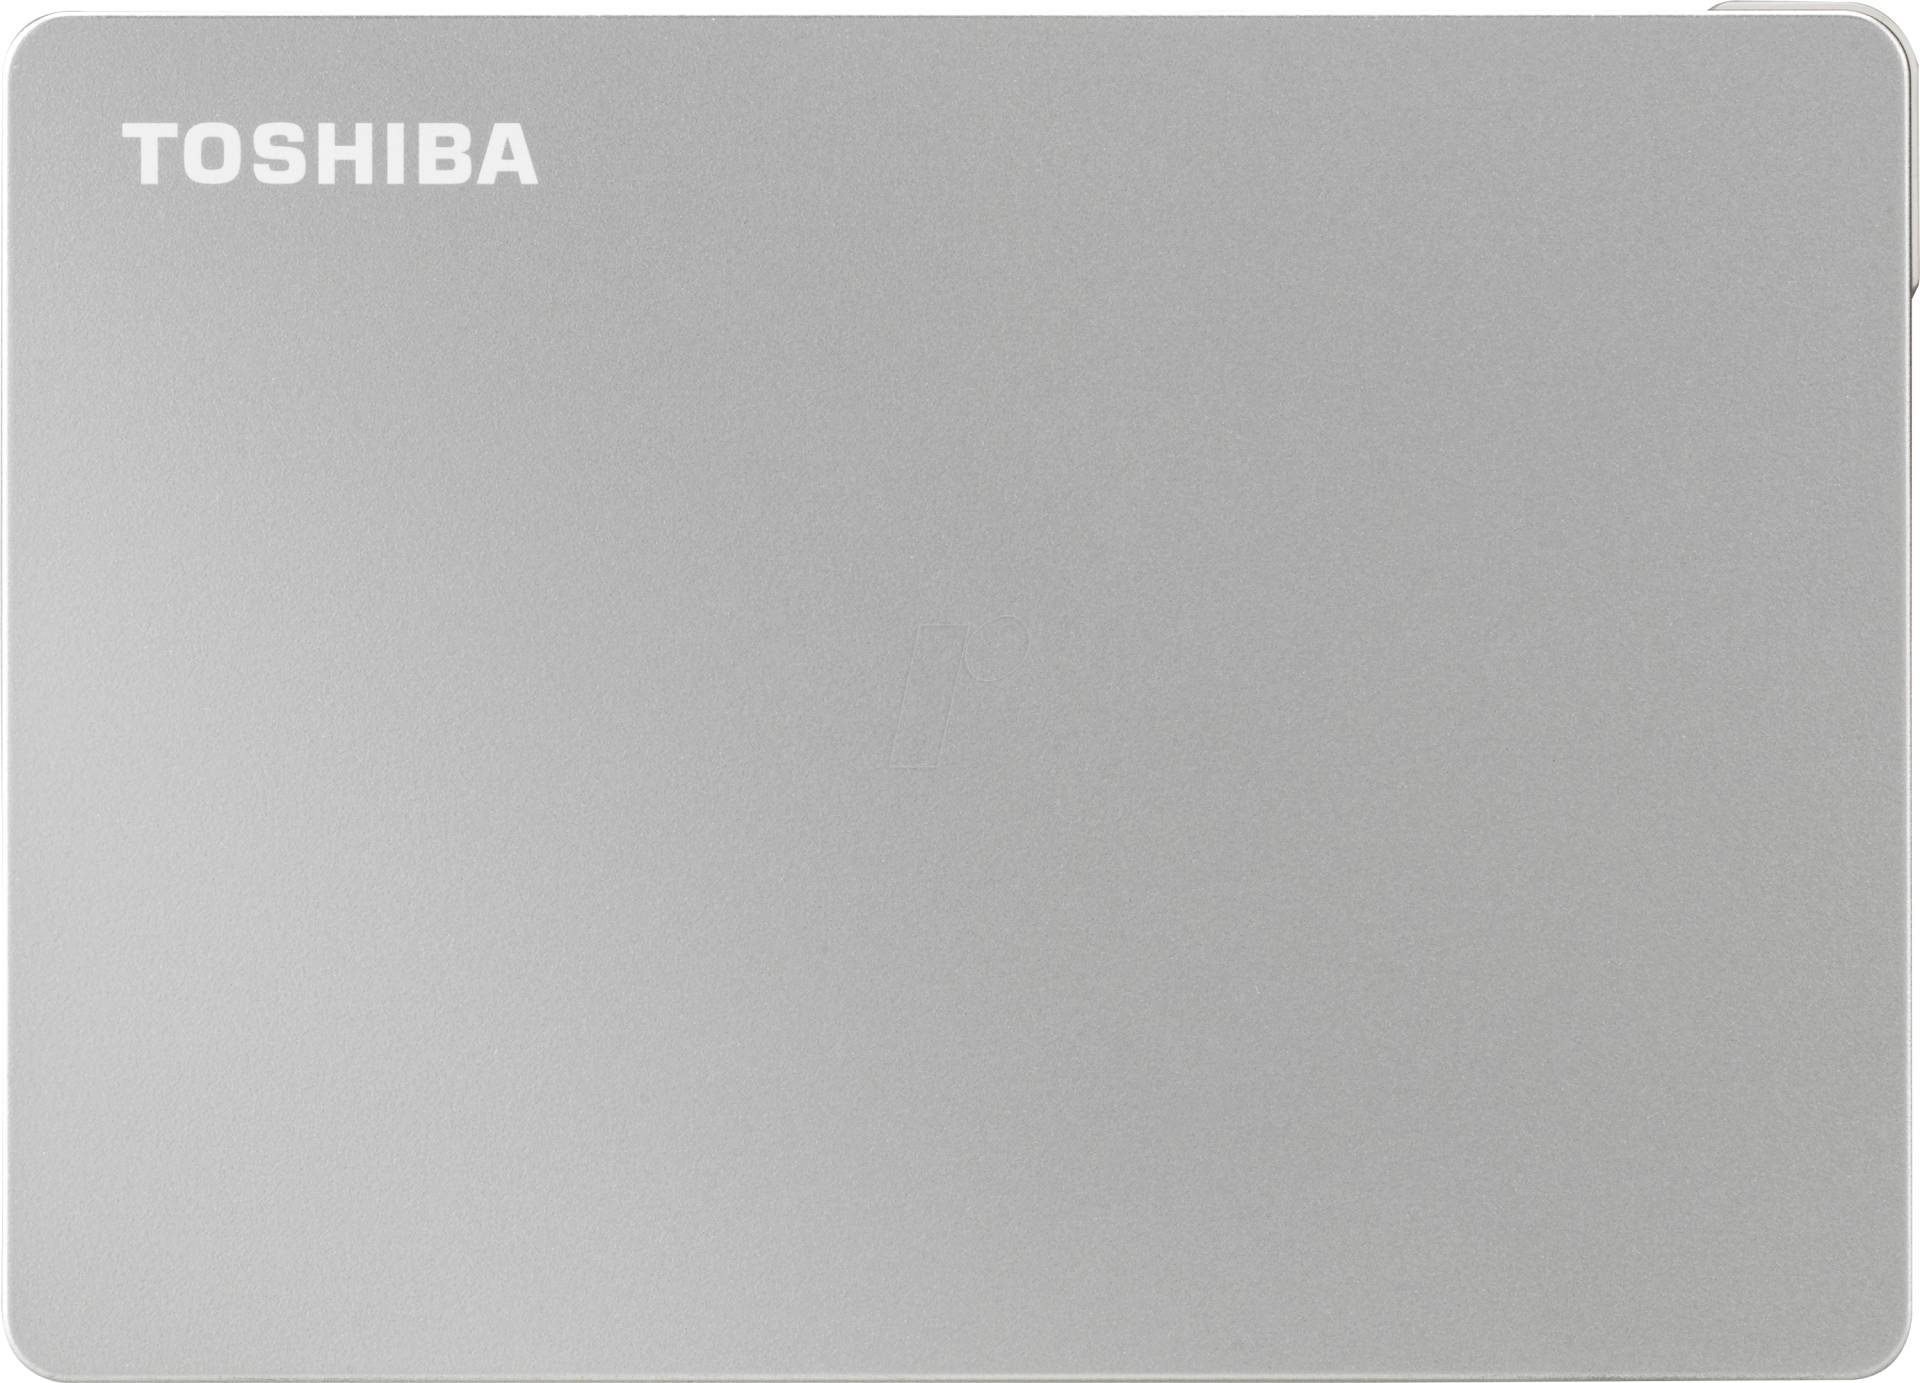 CANVIO FLEX 4 - Toshiba Canvio Flex silber 4TB von Toshiba